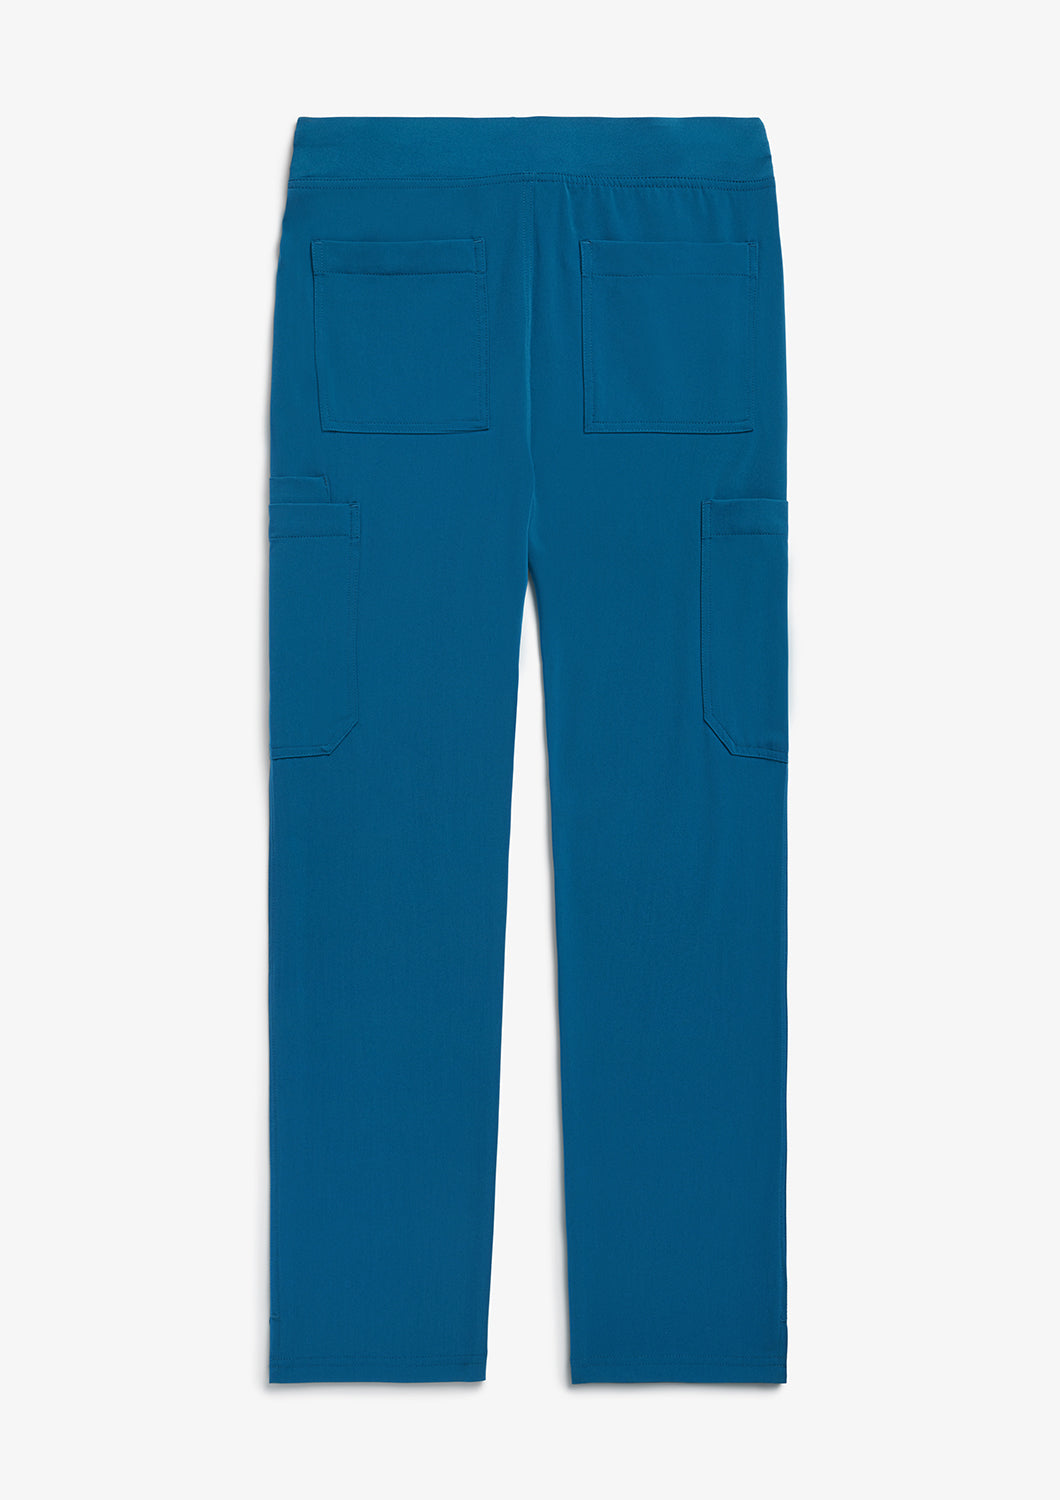 Union Pants - Caribbean Blue